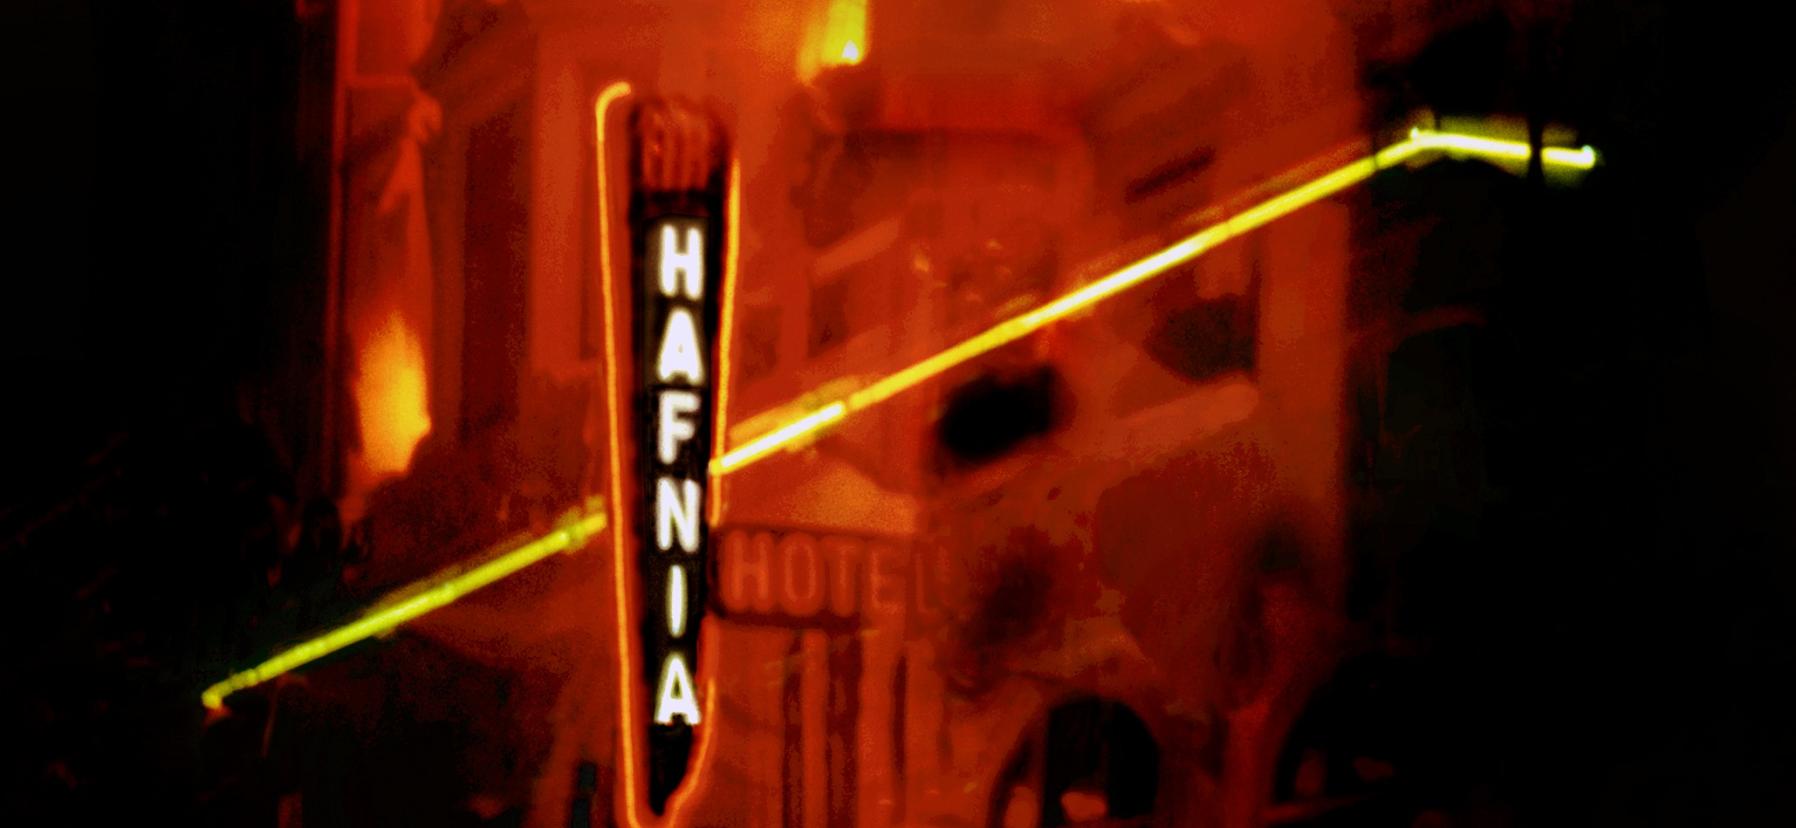 Udsnit af foto af Hotel Hafnia i brand i 1973